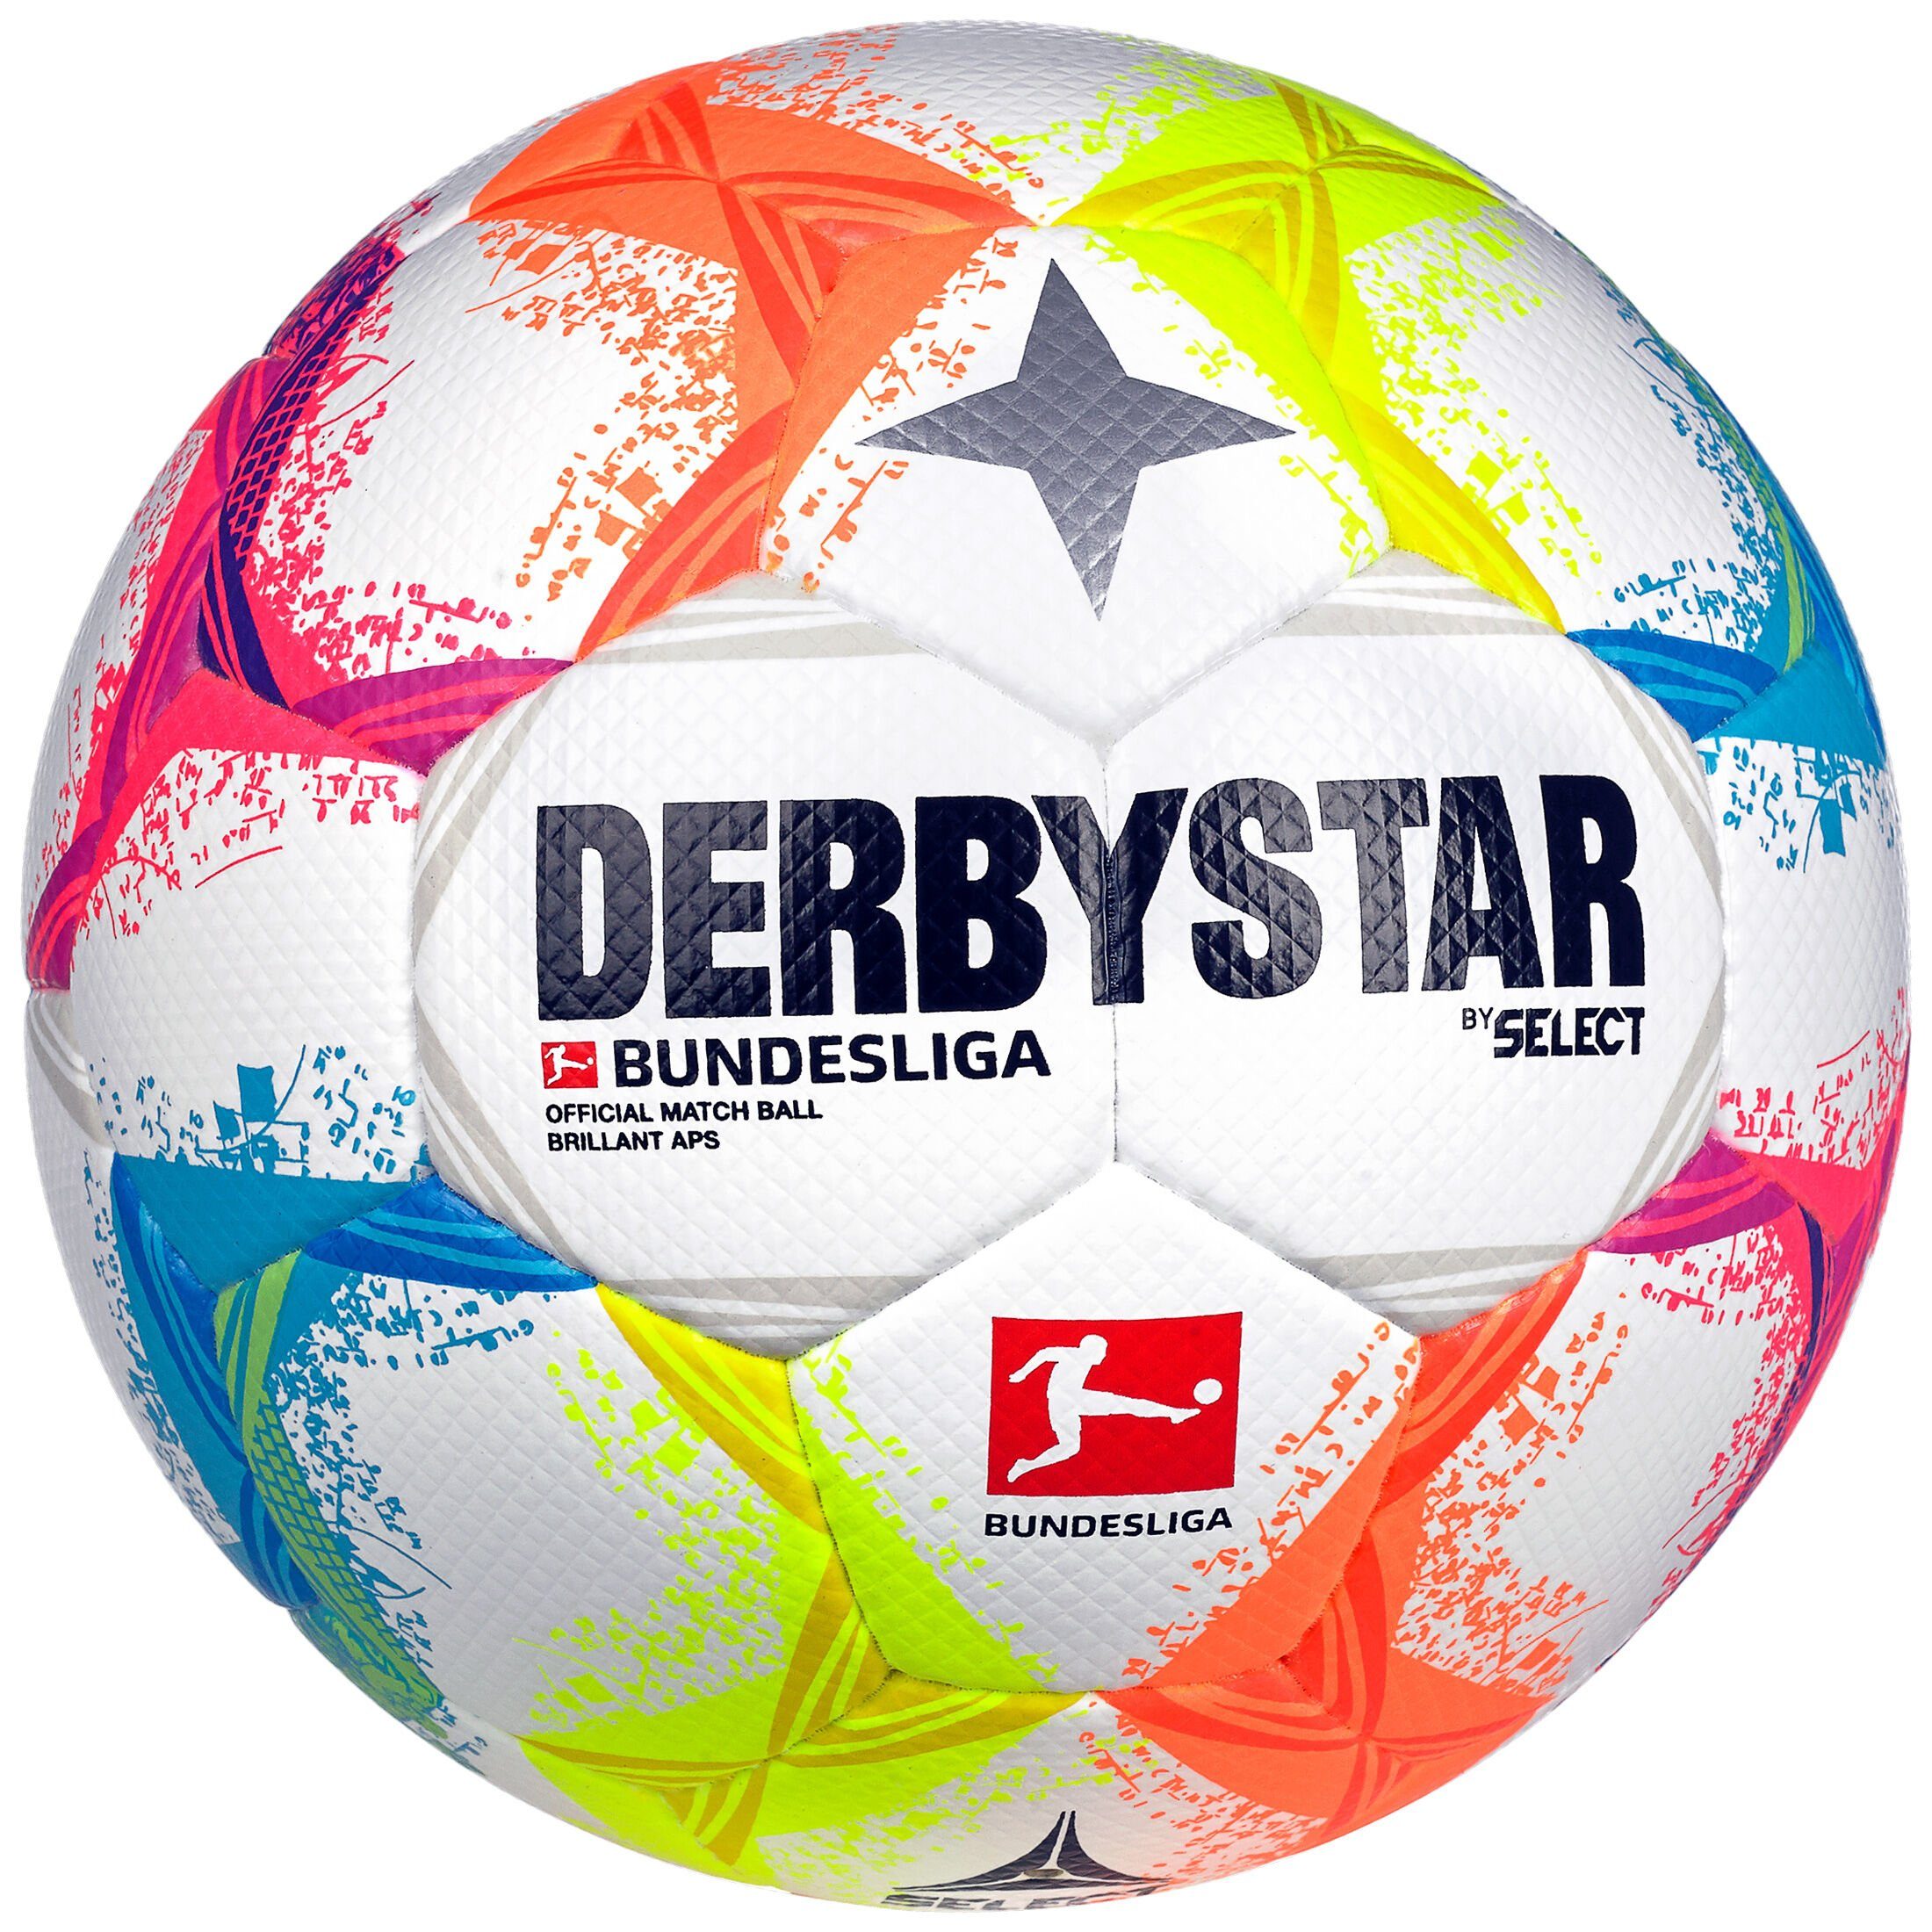 Derbystar Fußball Bundesliga Brillant APS v22 Fußball | Fußbälle